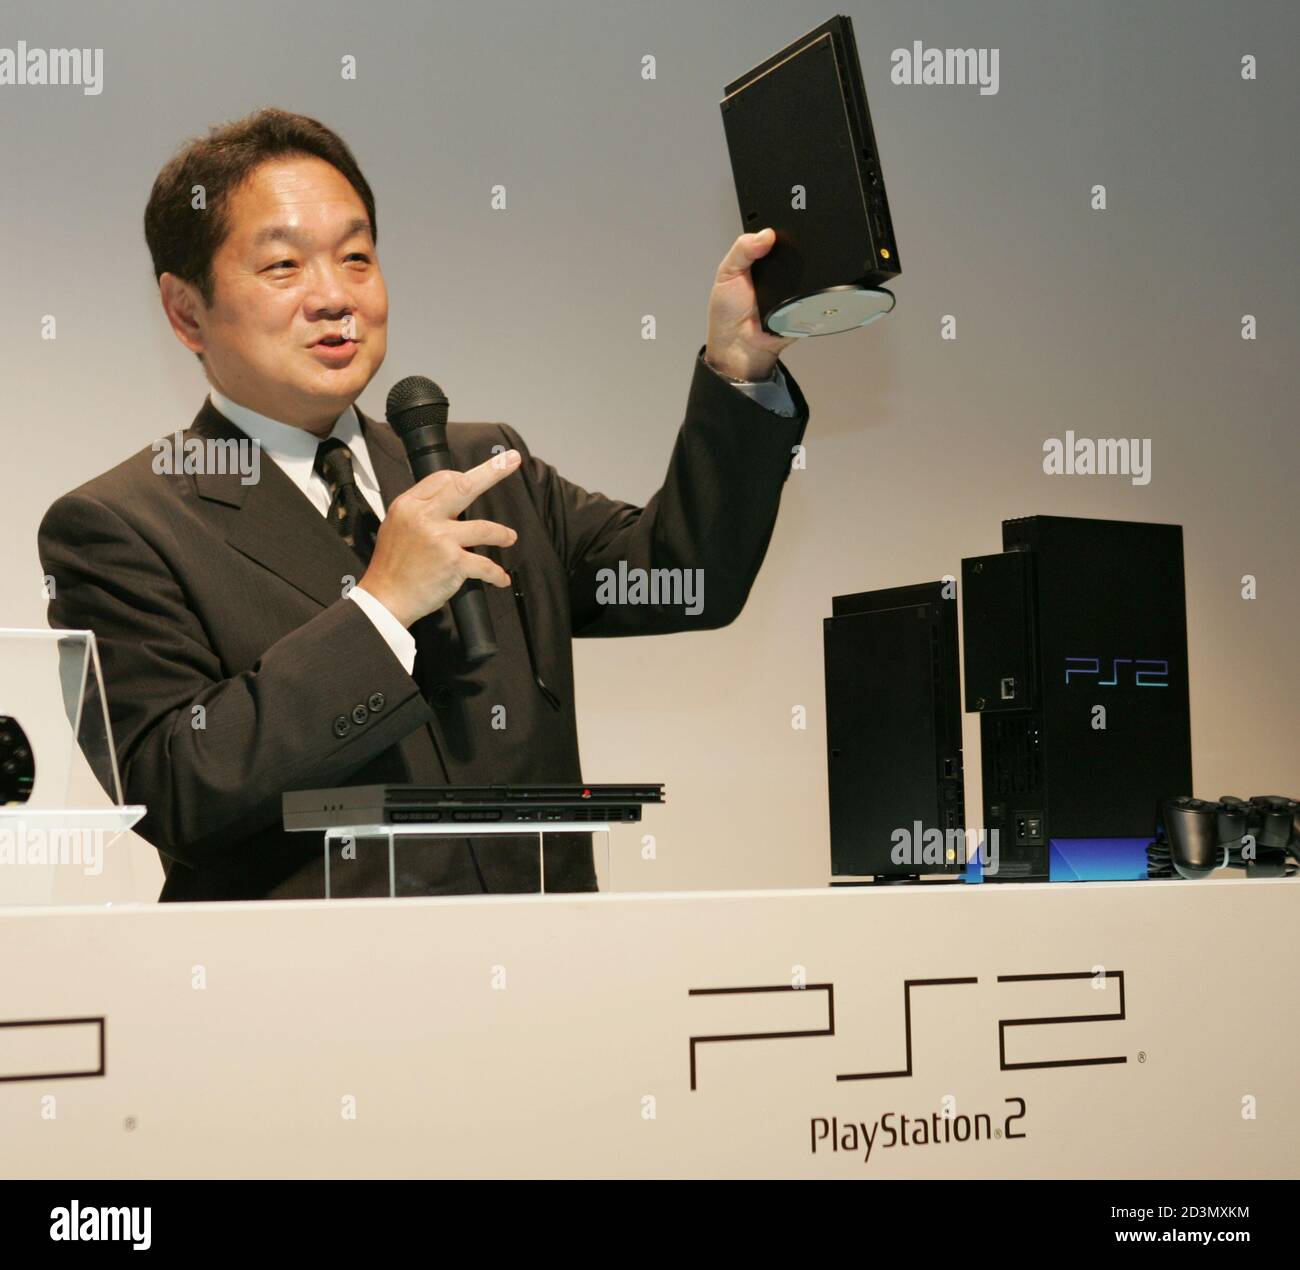 Sony Computer Entertainment Inc. President und Chief Exective Officer Ken  Kutaragi enthüllt neuen Look des Unternehmens für die PlayStation 2 (PS2)  Spiel-Konsole SCPH-70000 bei einer Präsentation in Tokio 21. September  2004. Japans